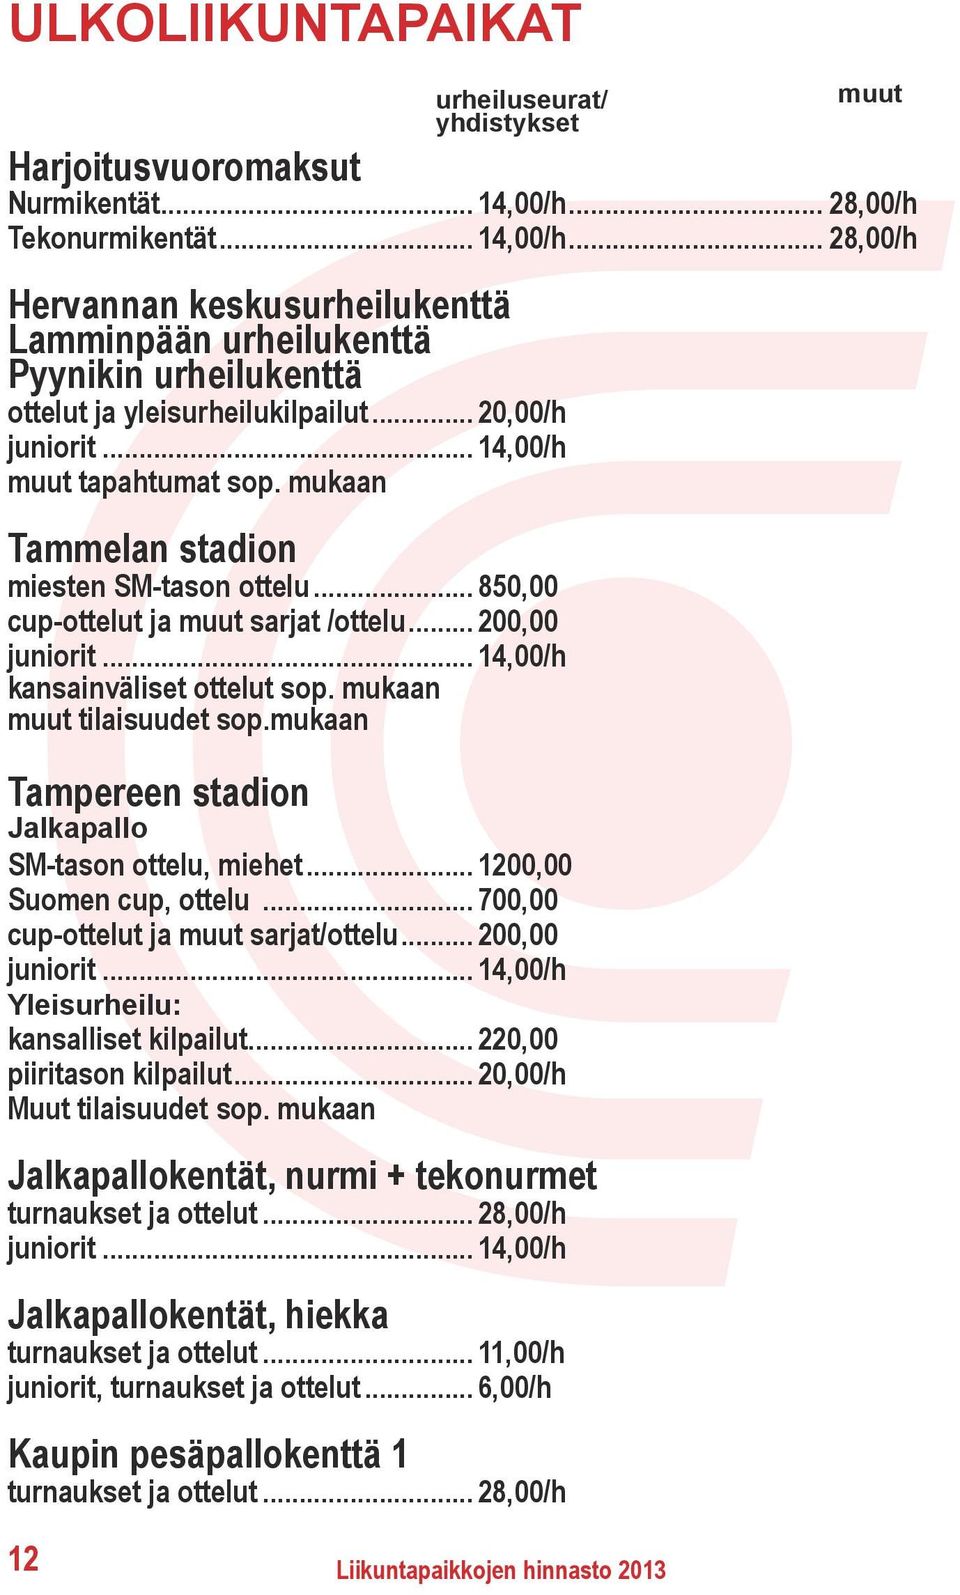 .. 14,00/h muut tapahtumat sop. mukaan Tammelan stadion miesten SM-tason ottelu... 850,00 cup-ottelut ja muut sarjat /ottelu... 200,00 juniorit... 14,00/h kansainväliset ottelut sop.